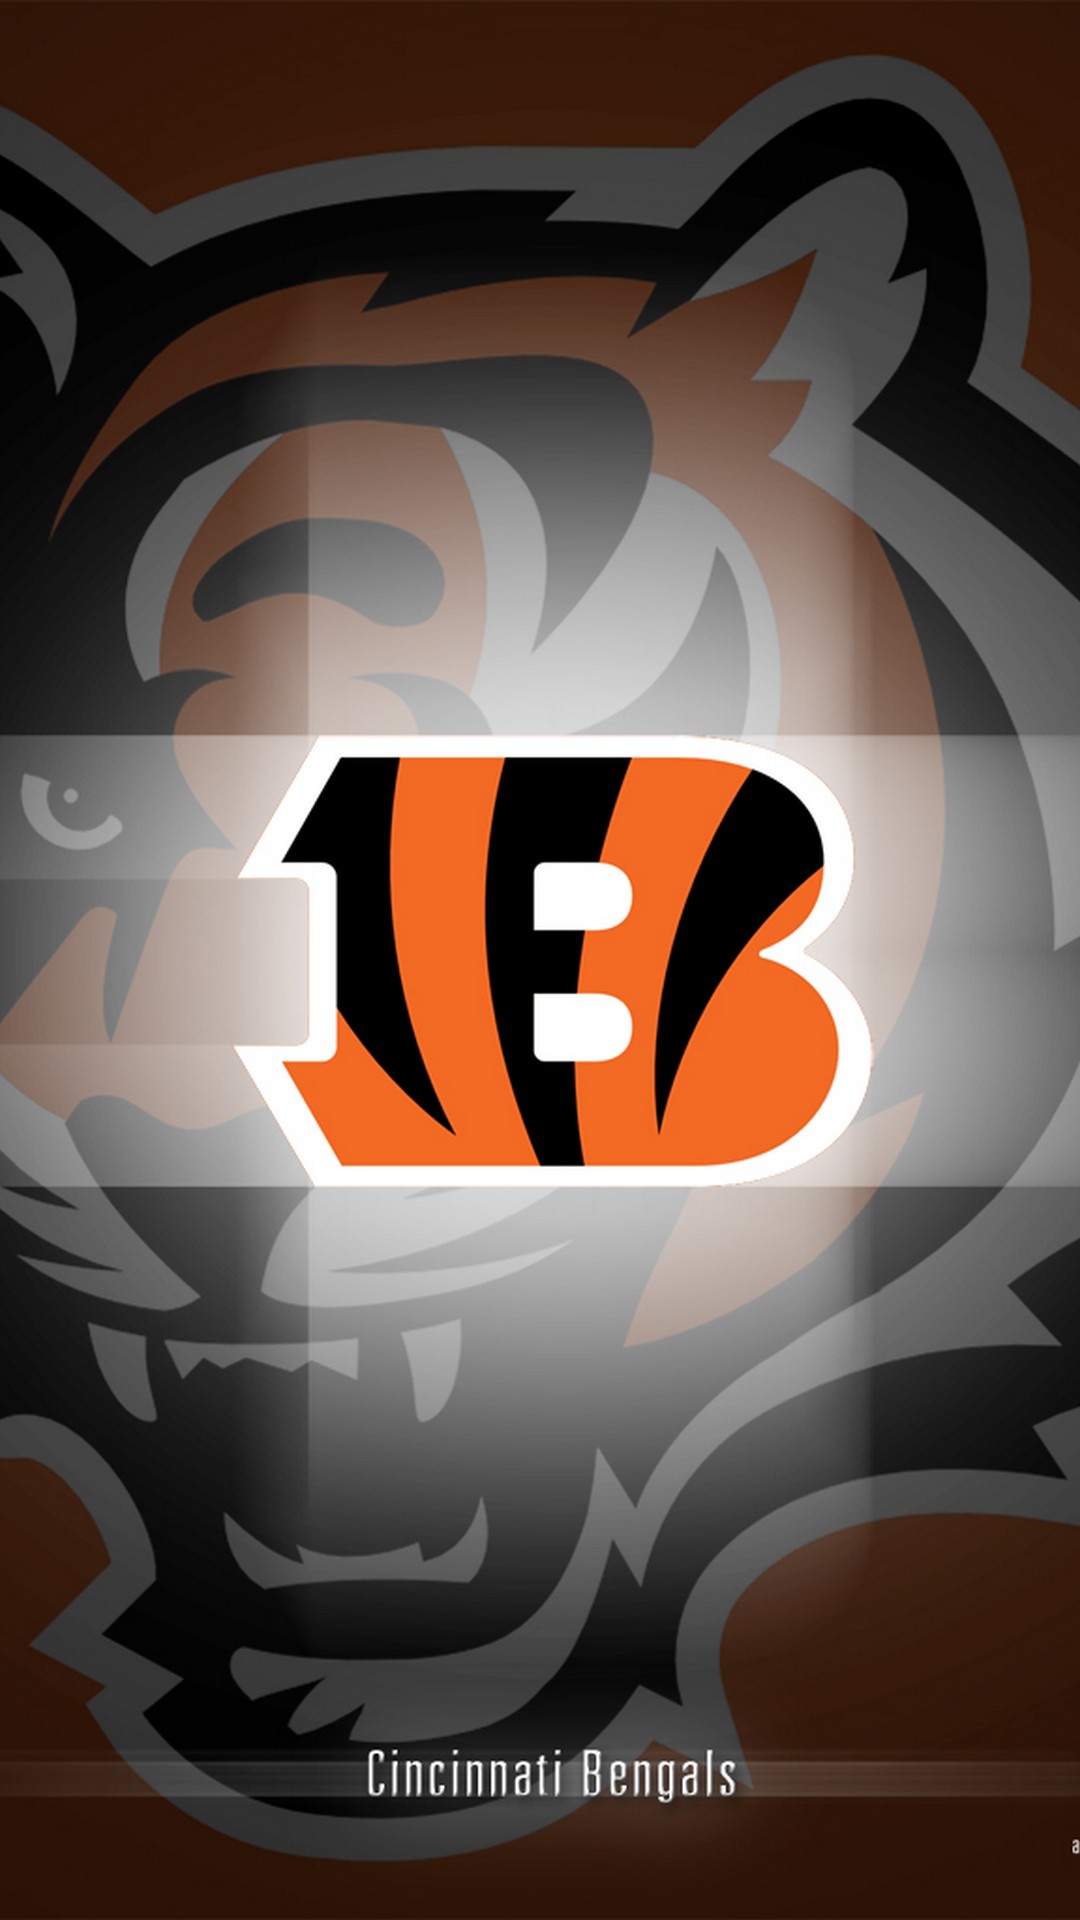 Download Cincinnati Bengals NFL iPhone Wallpaper  Wallpaperscom